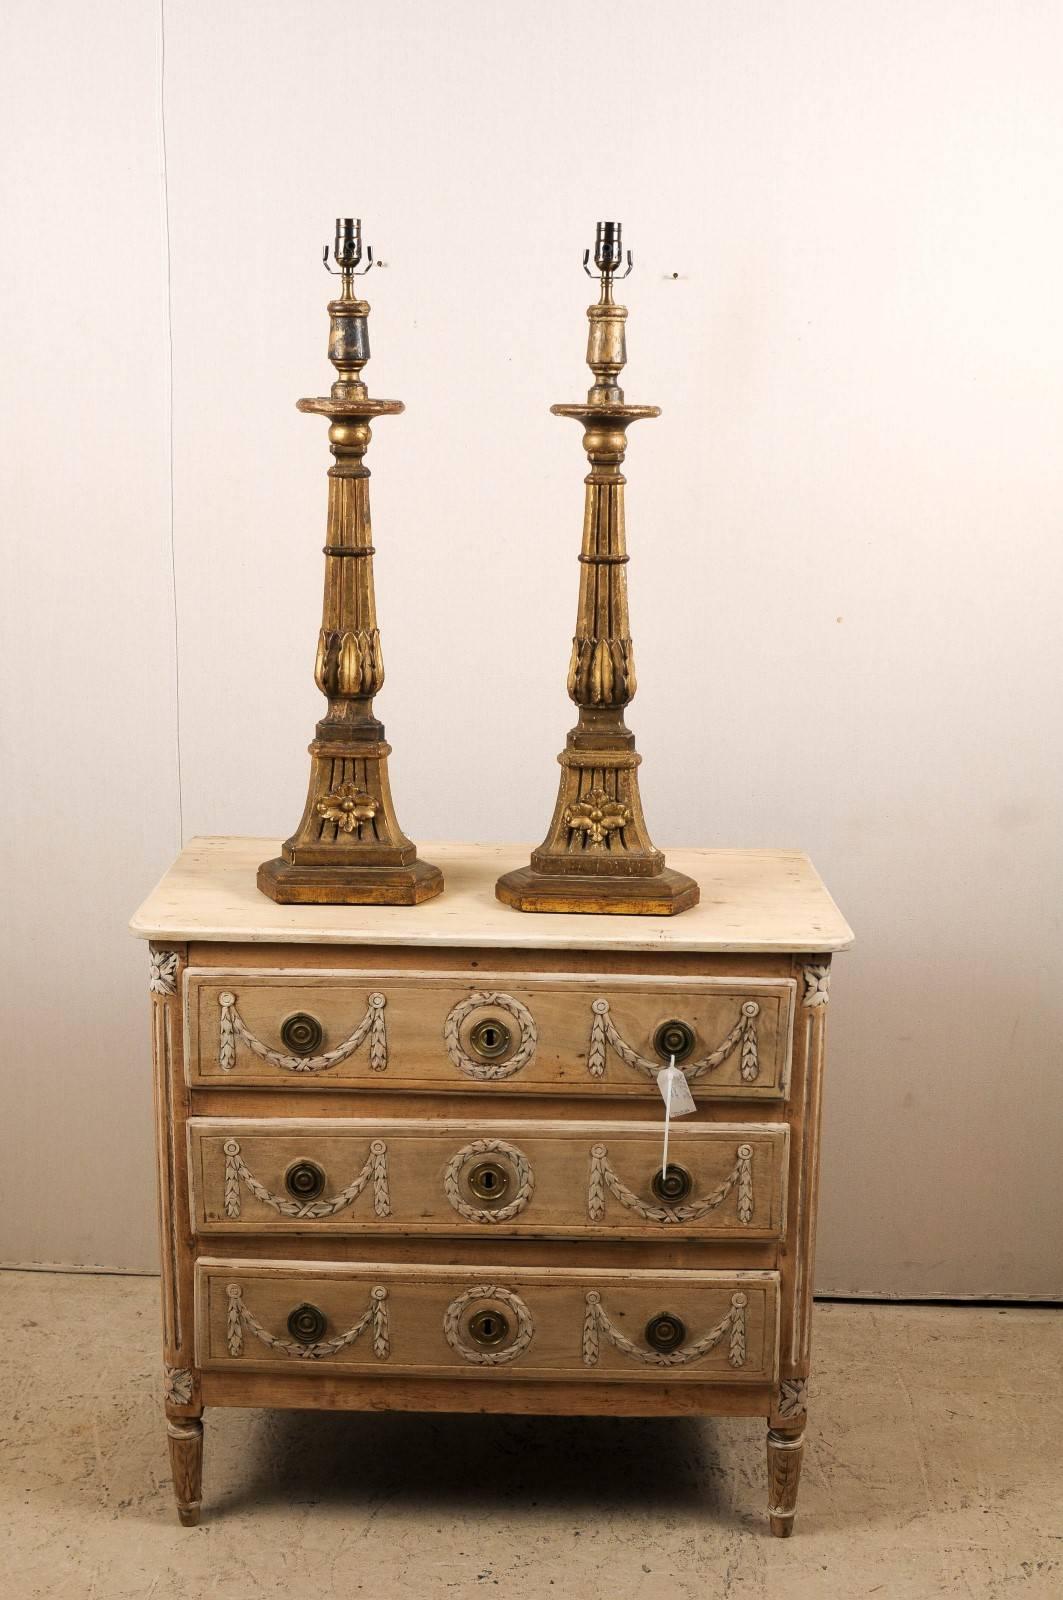 Une paire de chandeliers transformés en lampes de table. Cette paire de lampes de table italiennes en bois du XIXe siècle présente un chandelier triangulaire cannelé décoré de motifs floraux et d'une sculpture de fleurs. Des motifs de feuilles